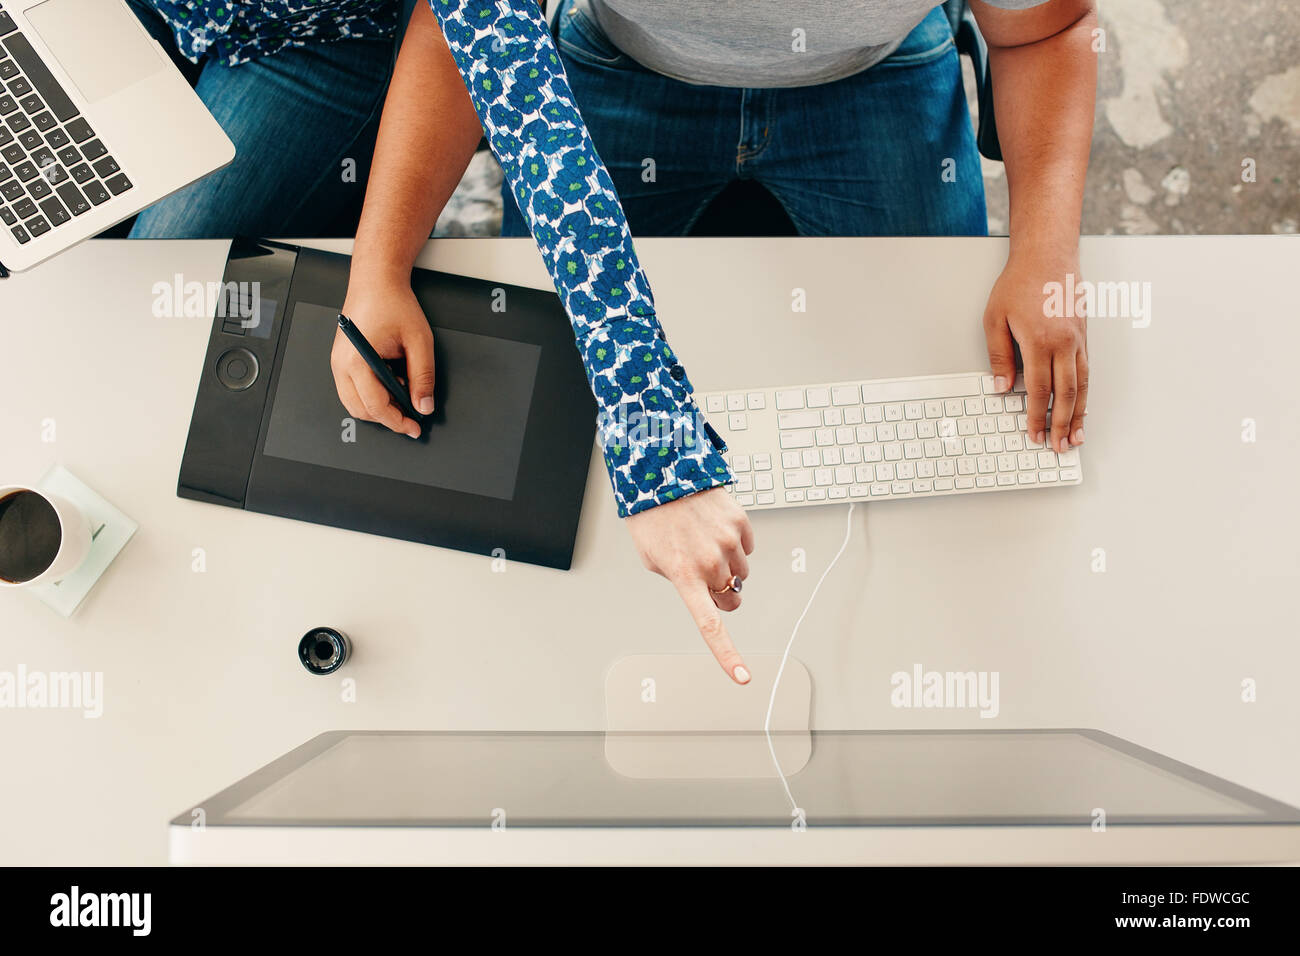 Vue de dessus cropped shot of a man using digital tablette graphique avec stylet et de l'ordinateur clavier, avec woman pointing at computer mo Banque D'Images